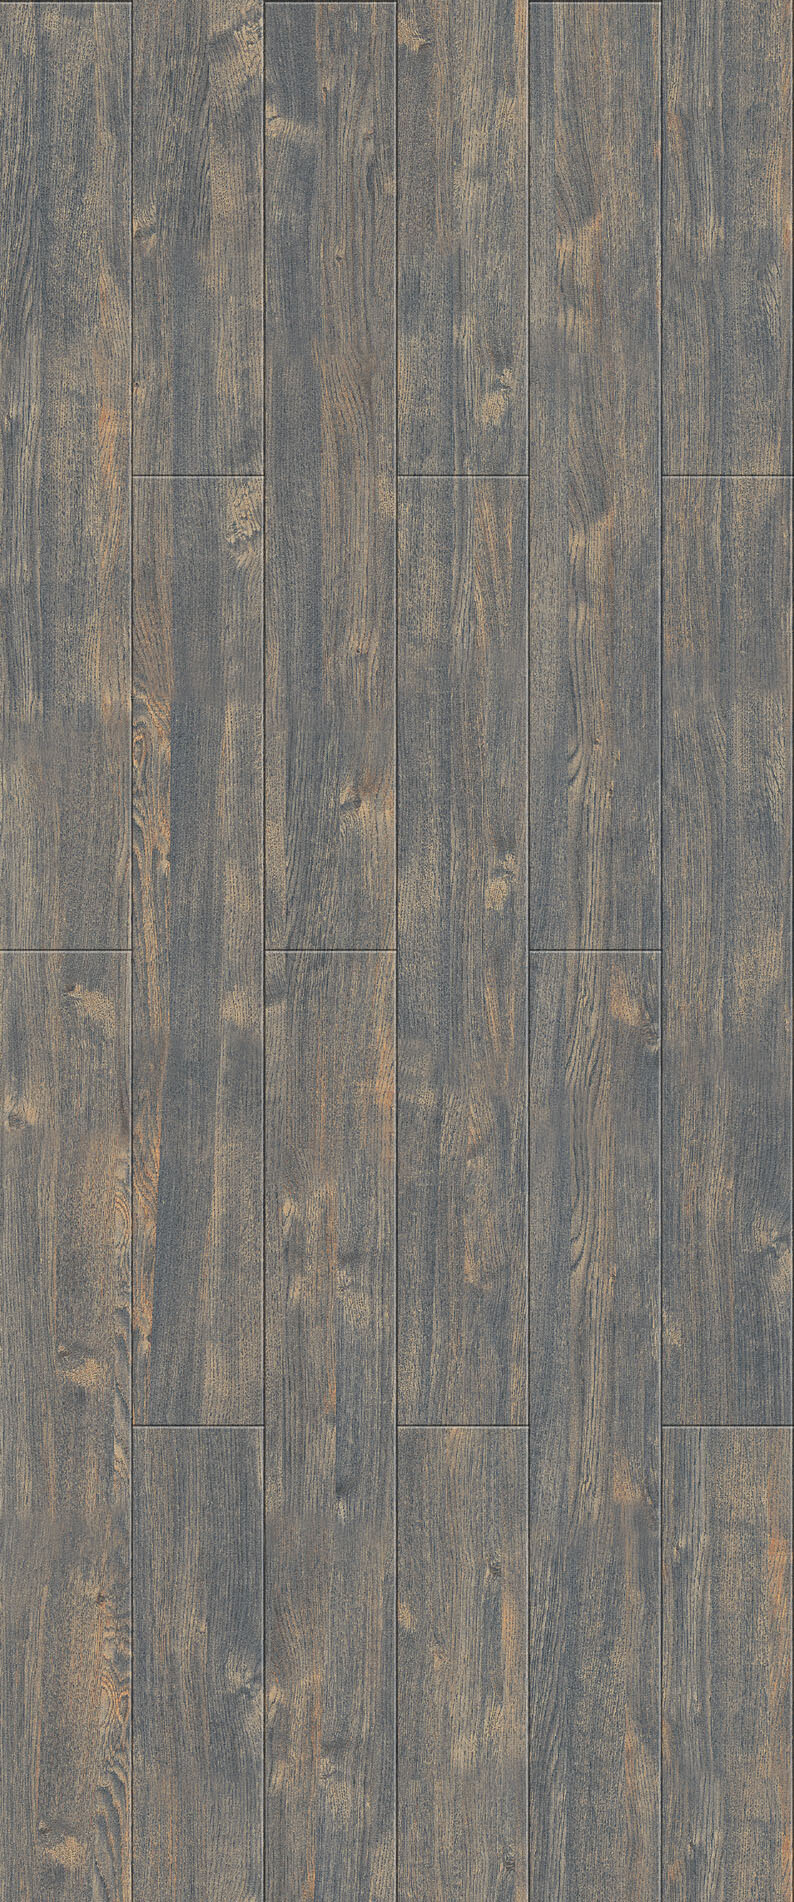 木地板 贴图 木材 地板贴图 木材贴图 木地板贴图 木地板效果图 木地板材质 装饰素材 室内装饰用图